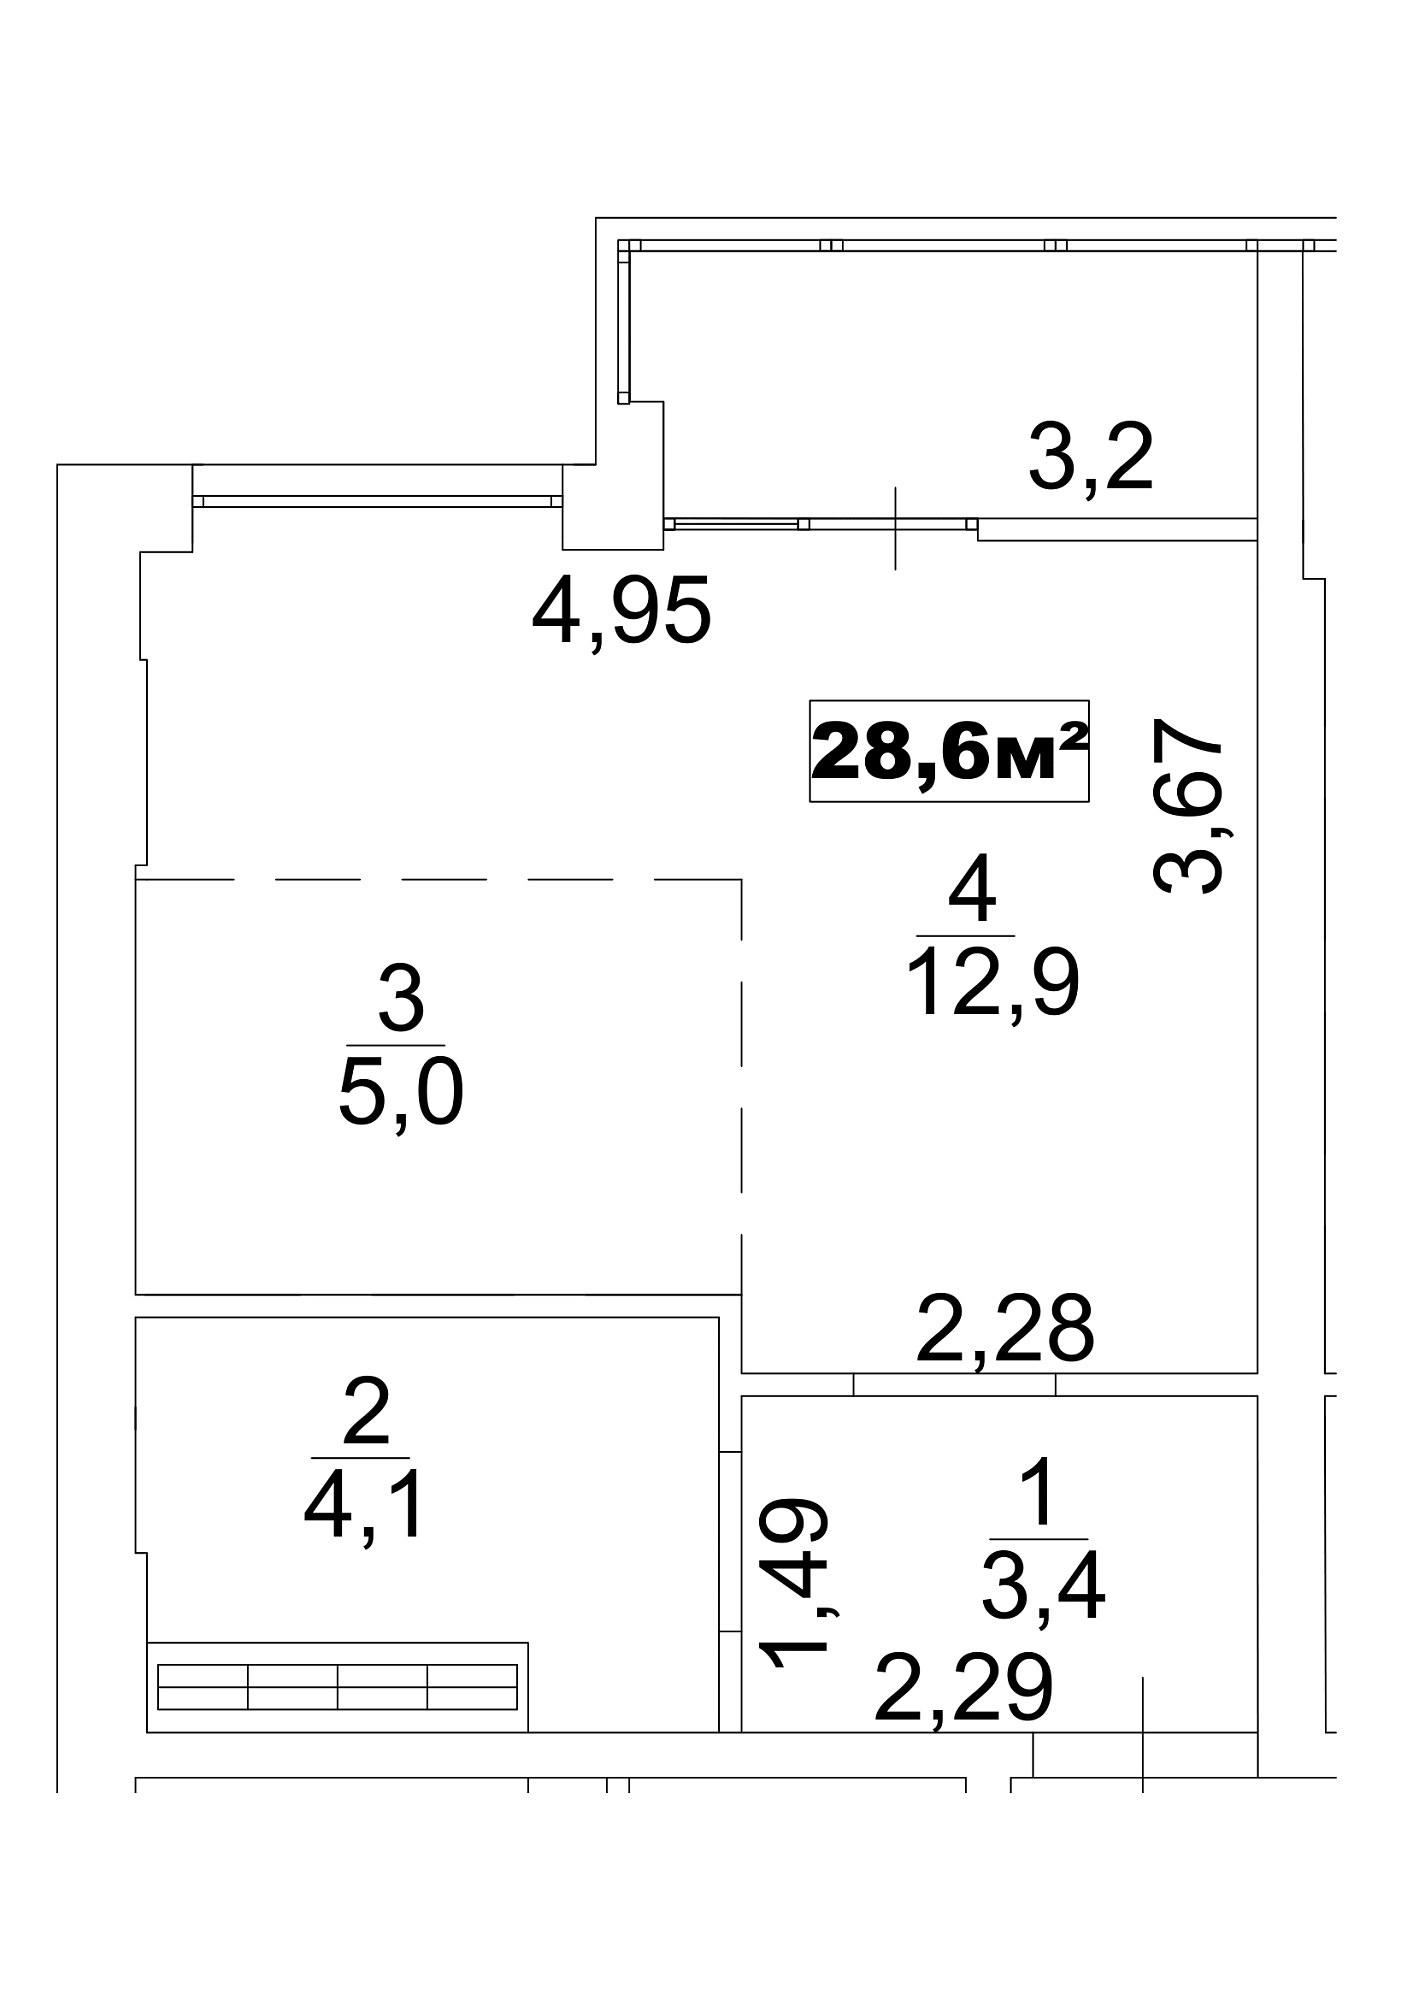 Планування Smart-квартира площею 28.6м2, AB-13-08/0063б.